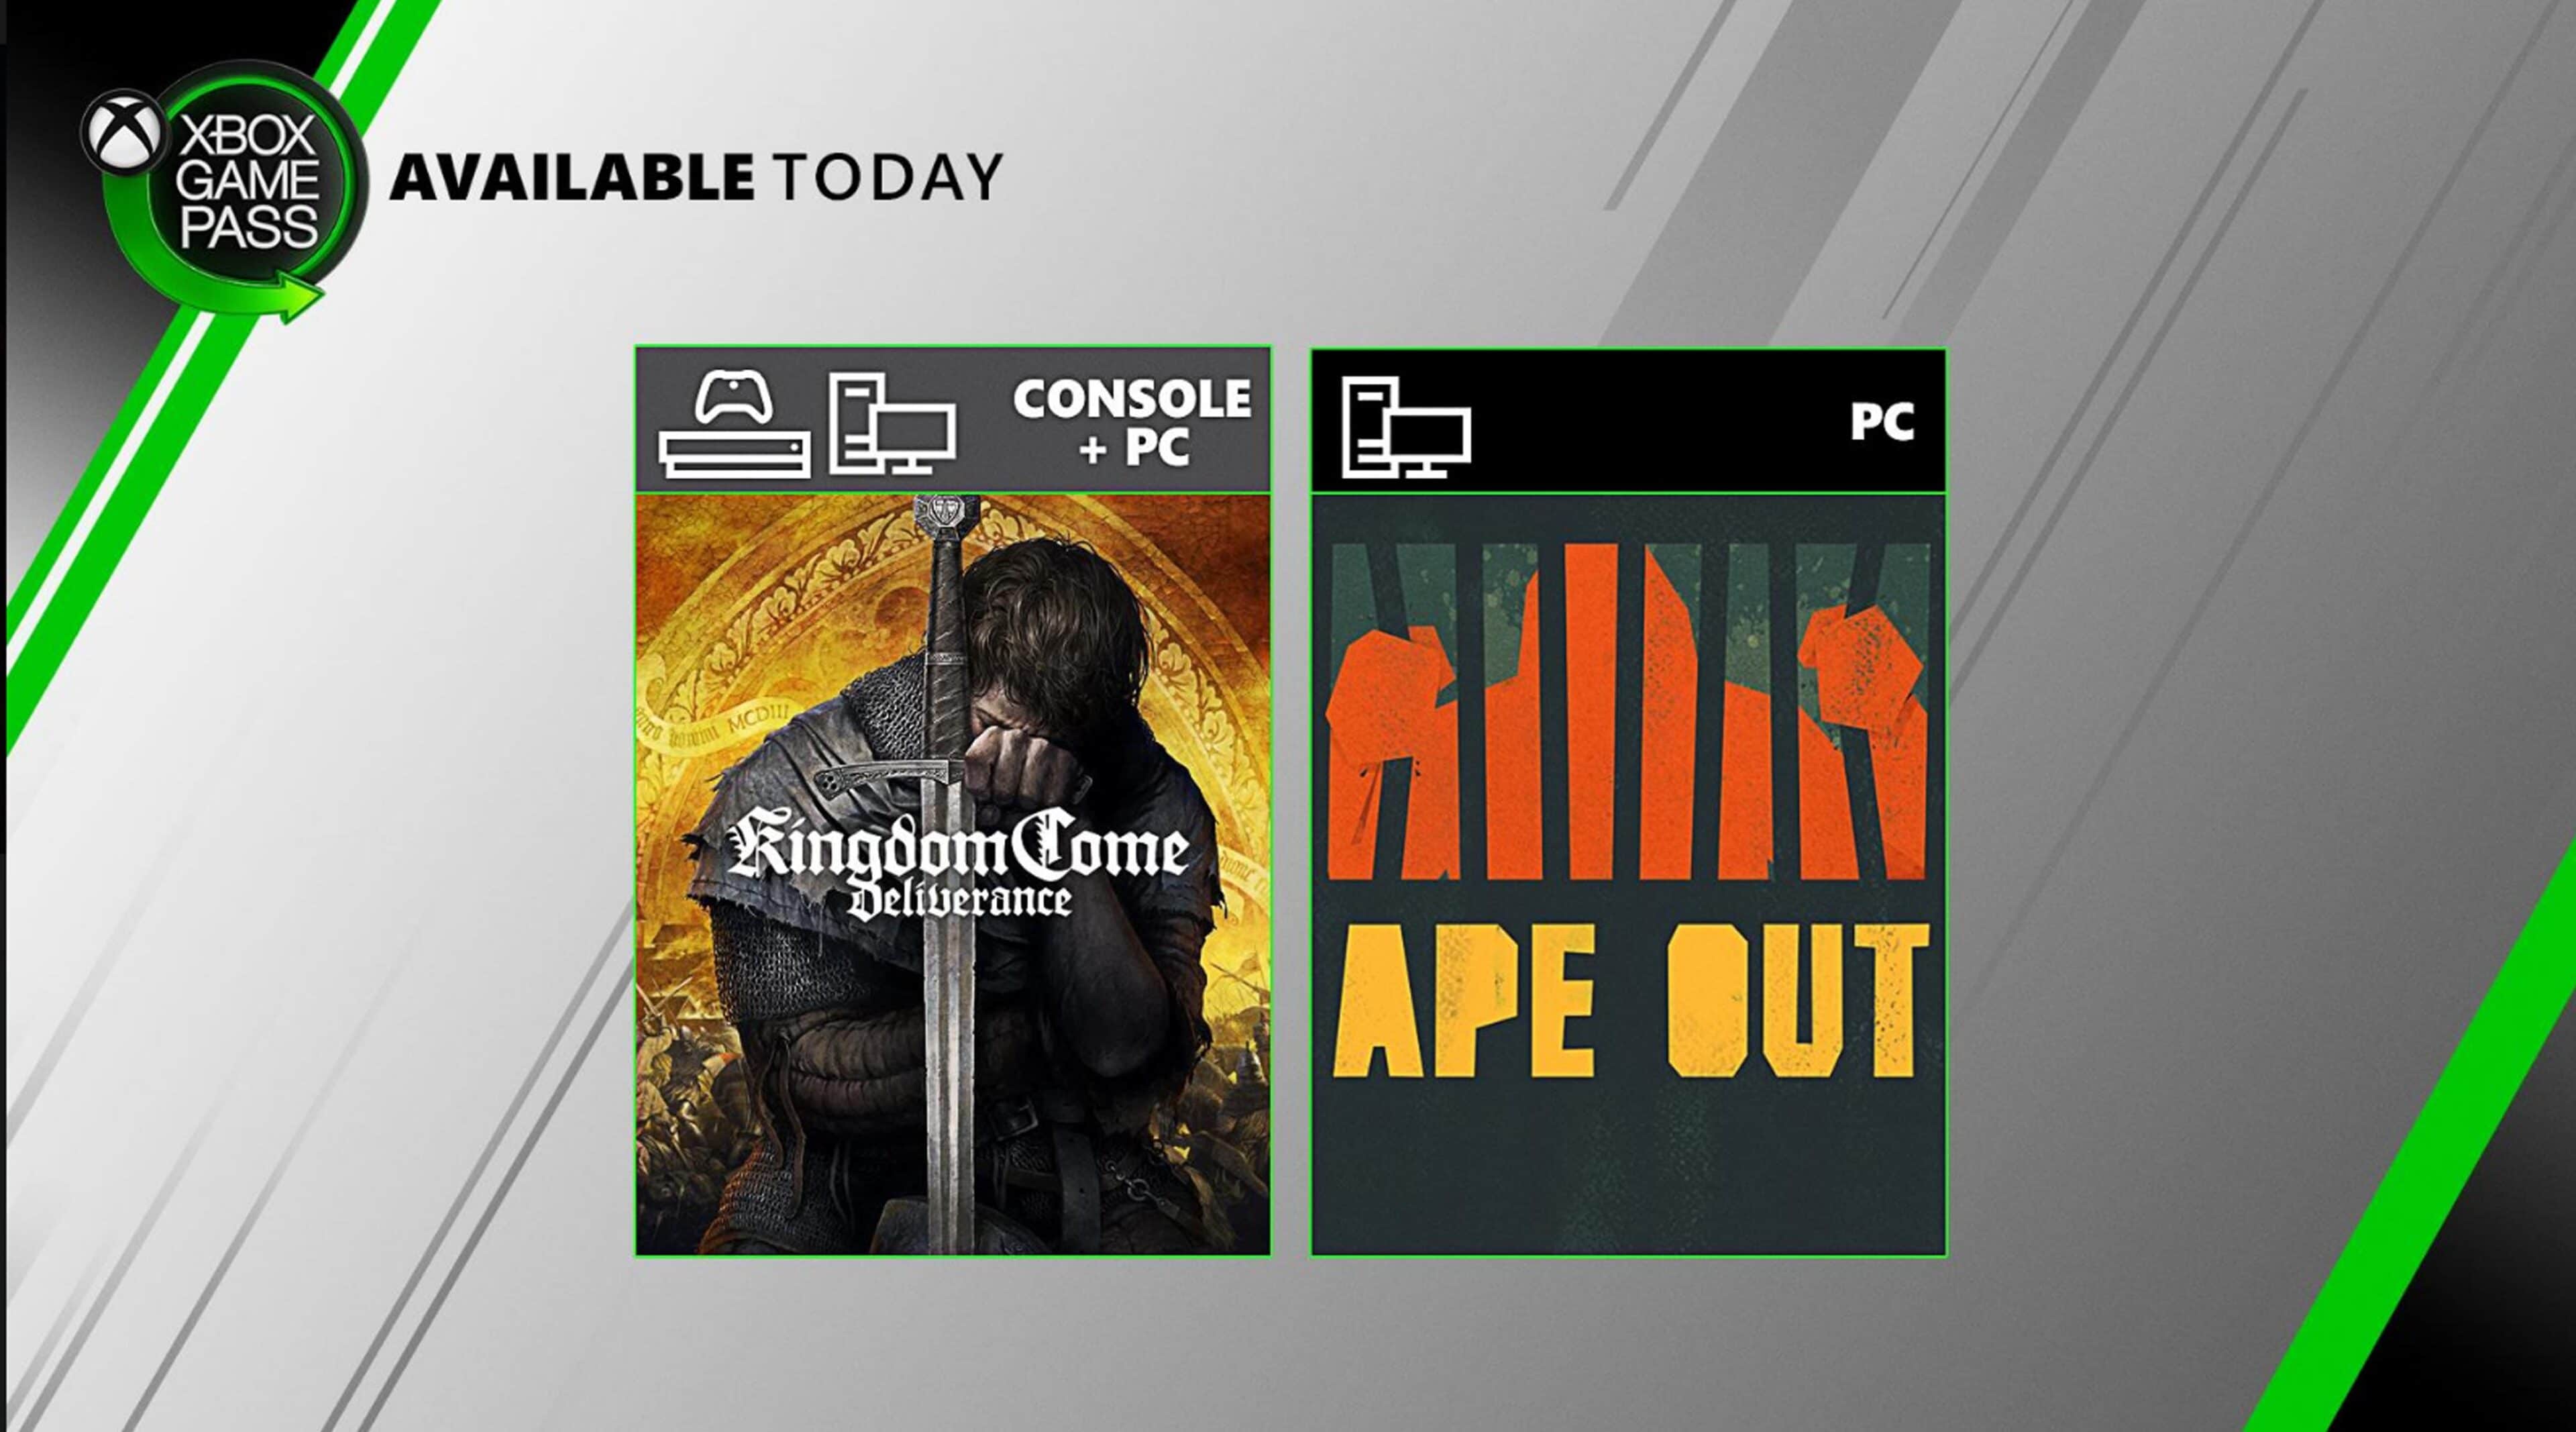 Xbox Game Pass agrega dos nuevos juegos al servicio